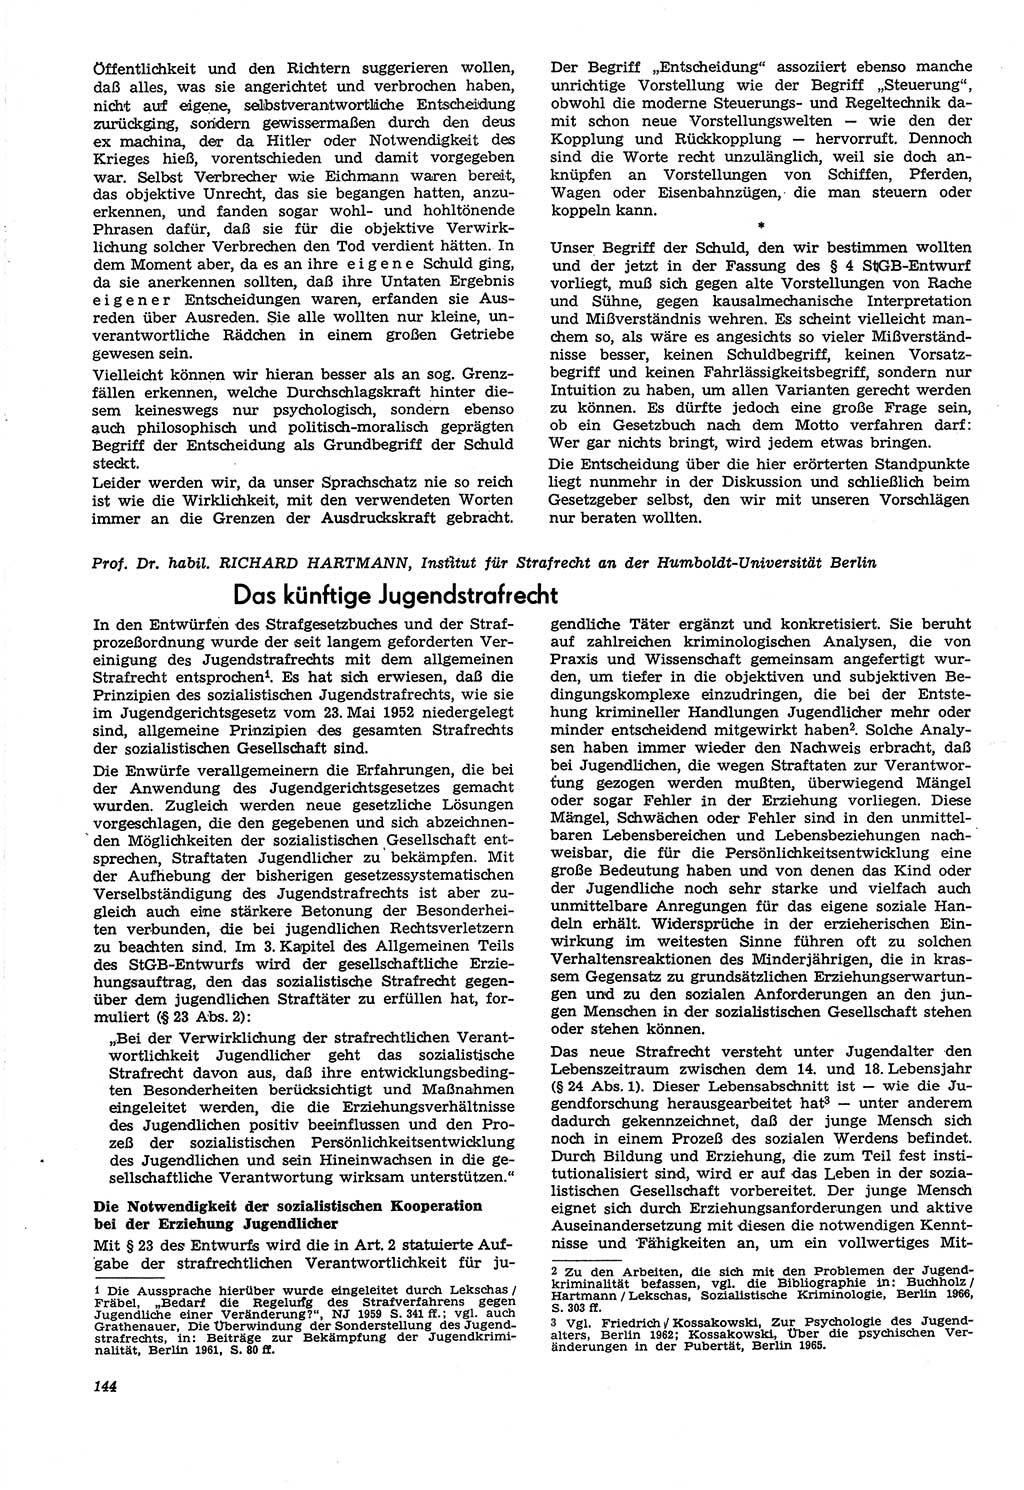 Neue Justiz (NJ), Zeitschrift für Recht und Rechtswissenschaft [Deutsche Demokratische Republik (DDR)], 21. Jahrgang 1967, Seite 144 (NJ DDR 1967, S. 144)